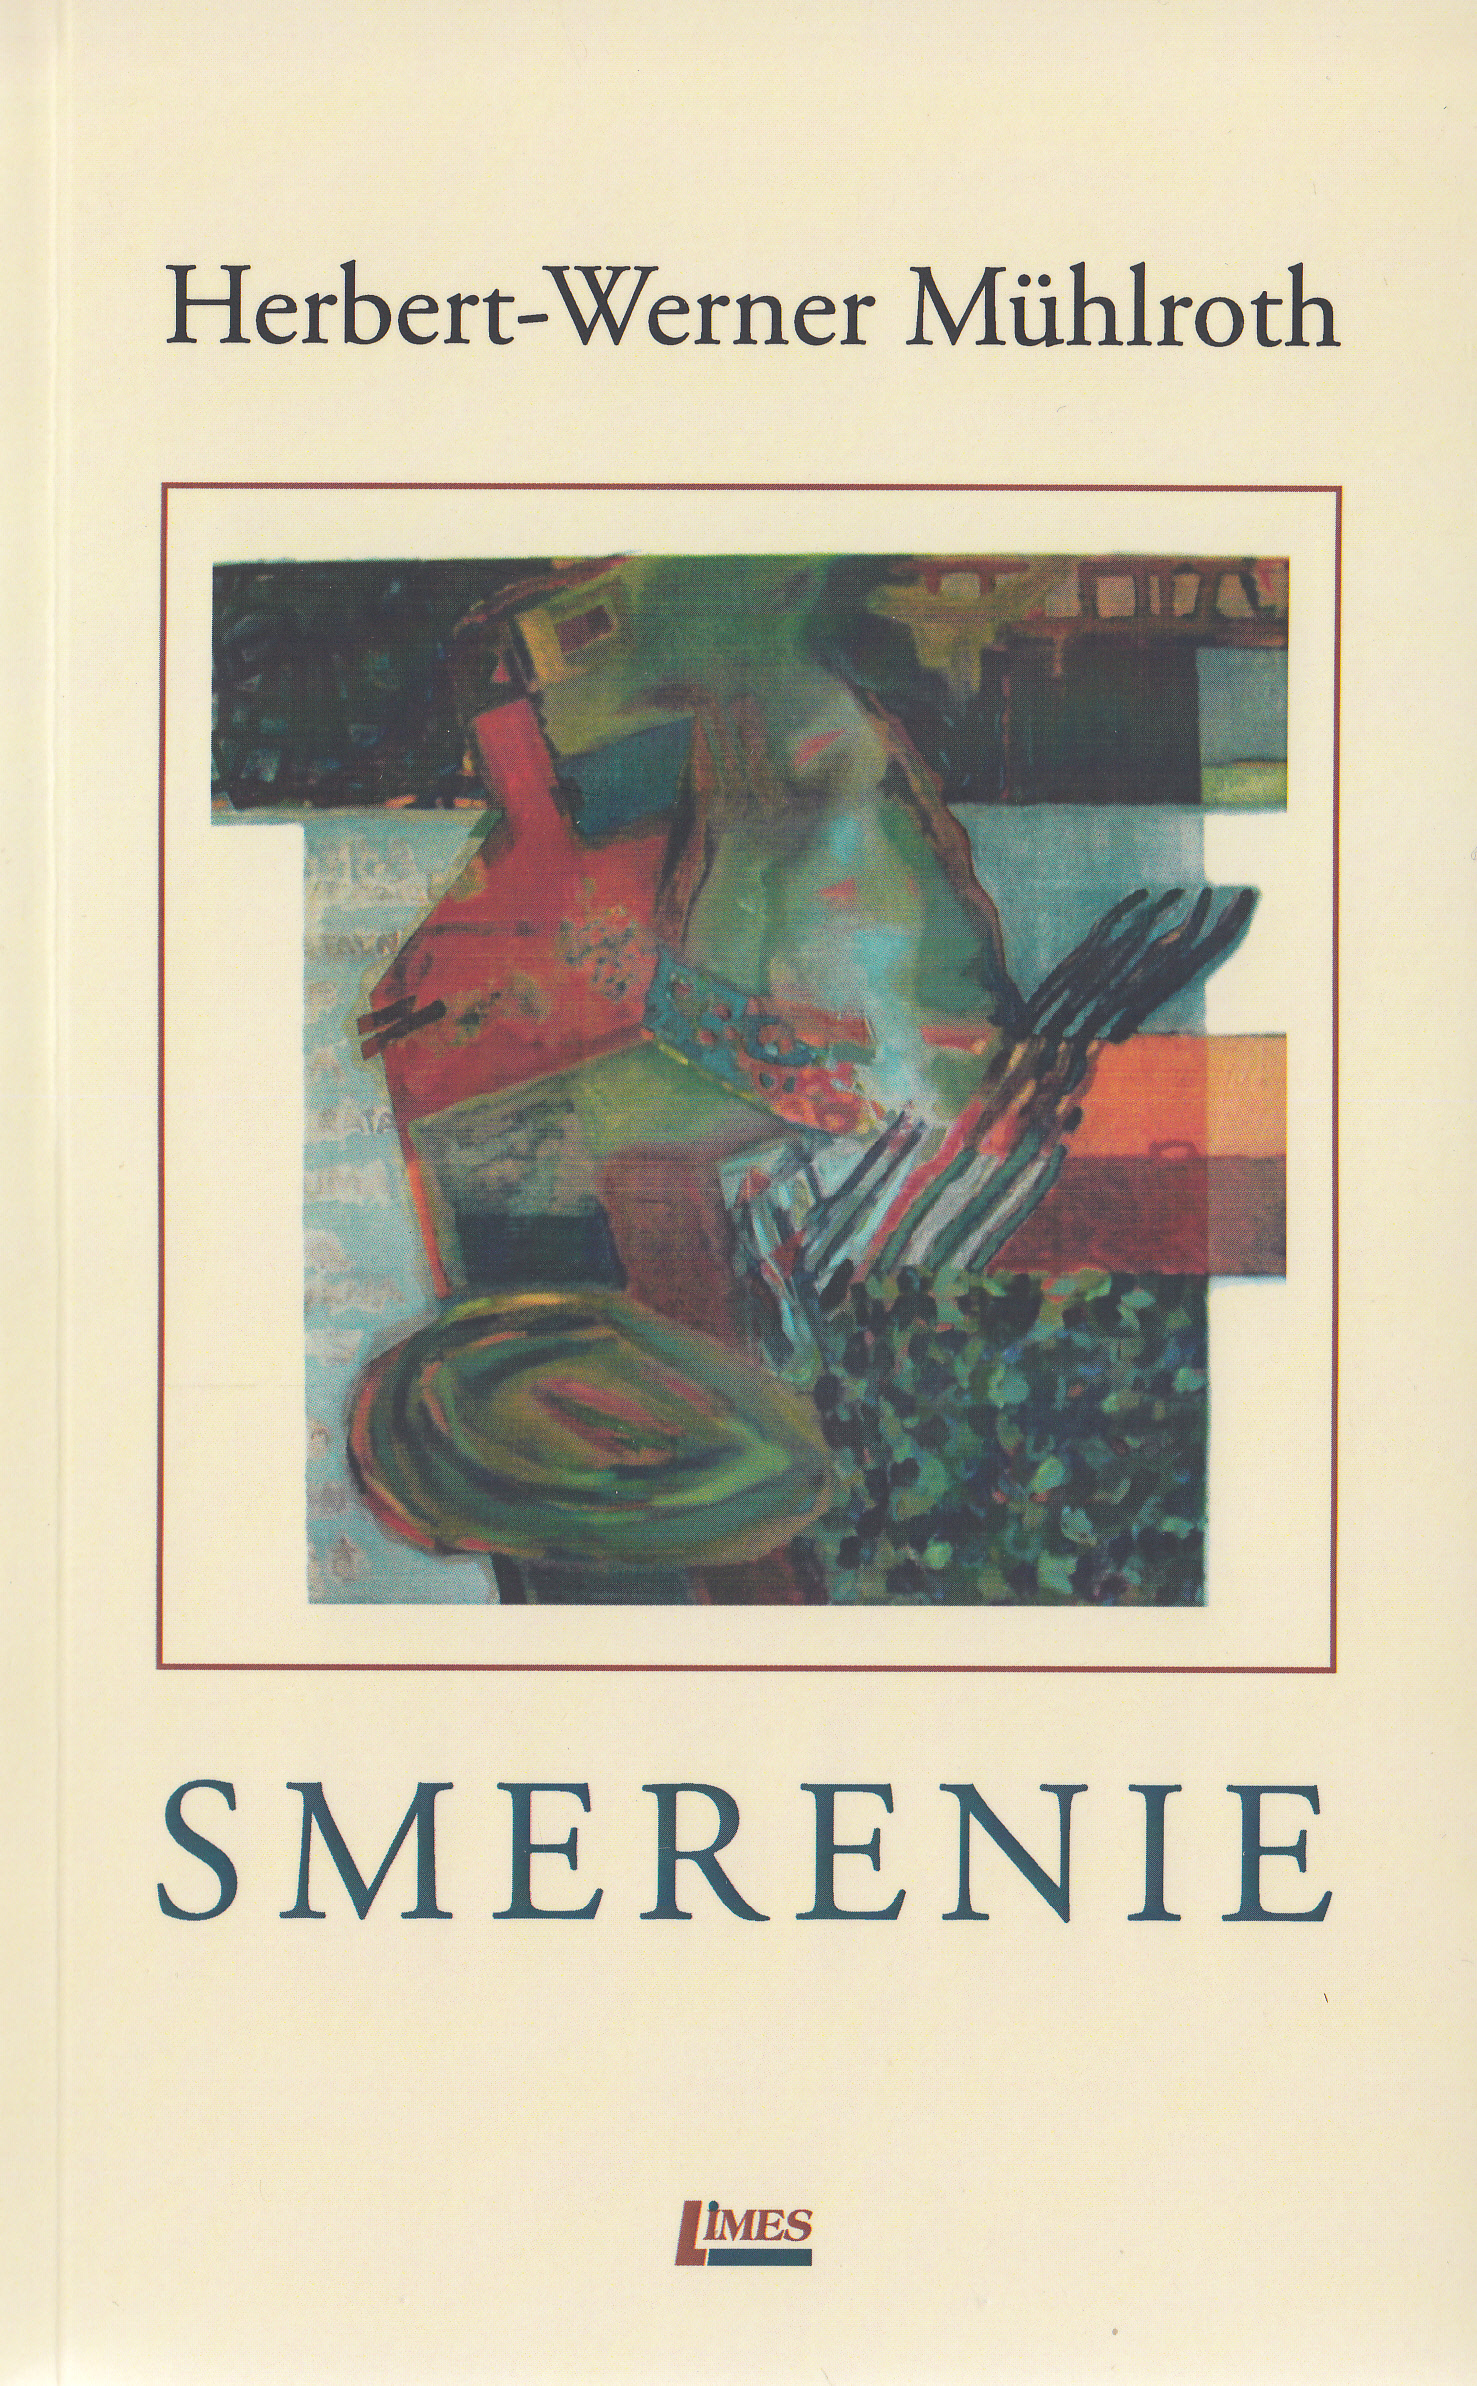 Smerenie - Herbert-Werner Muhlroth